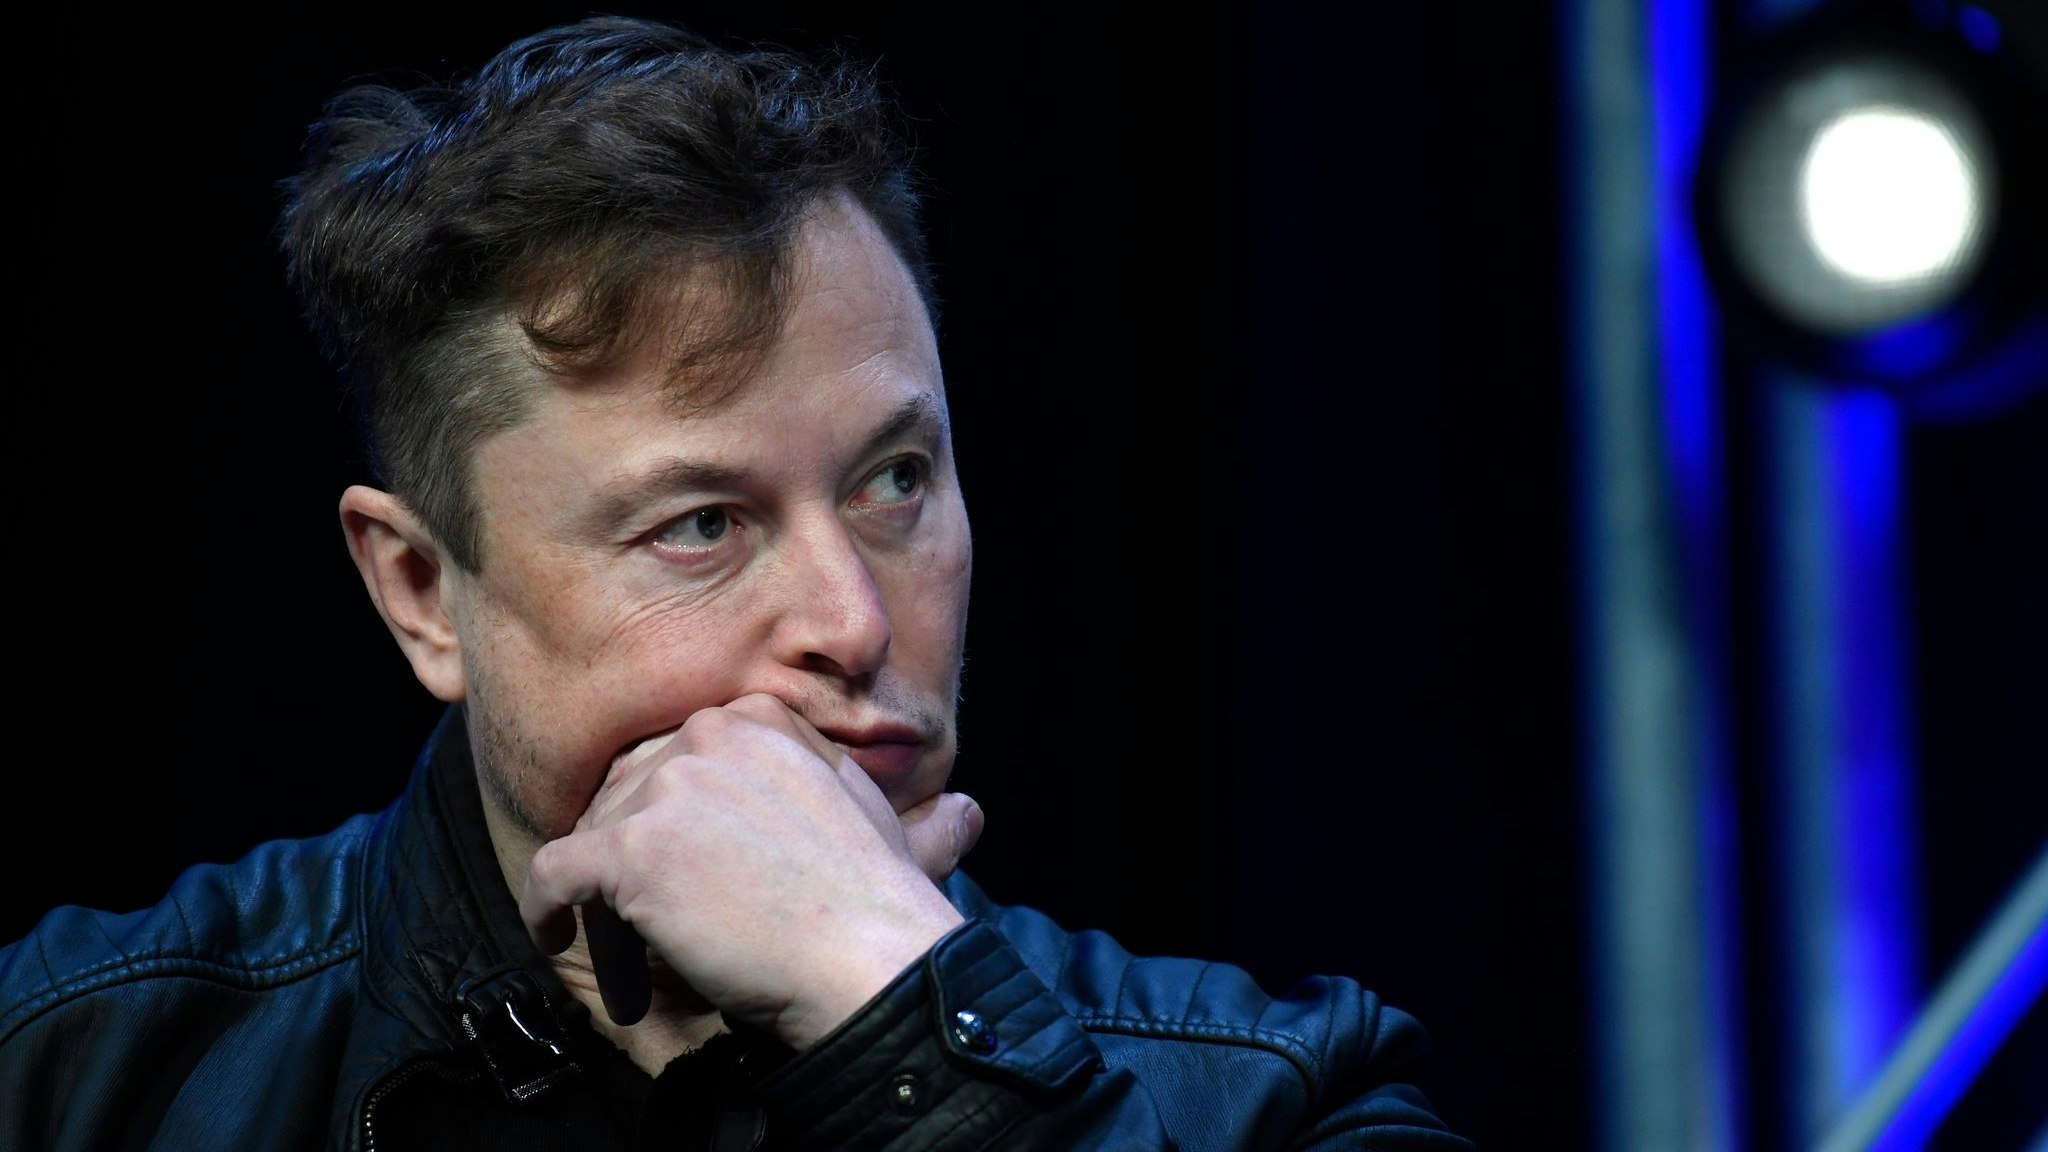 Unternehmer Elon Musk hat kürzlich den Online-Dienst Twitter übernommen. Foto: dpa/Walsh